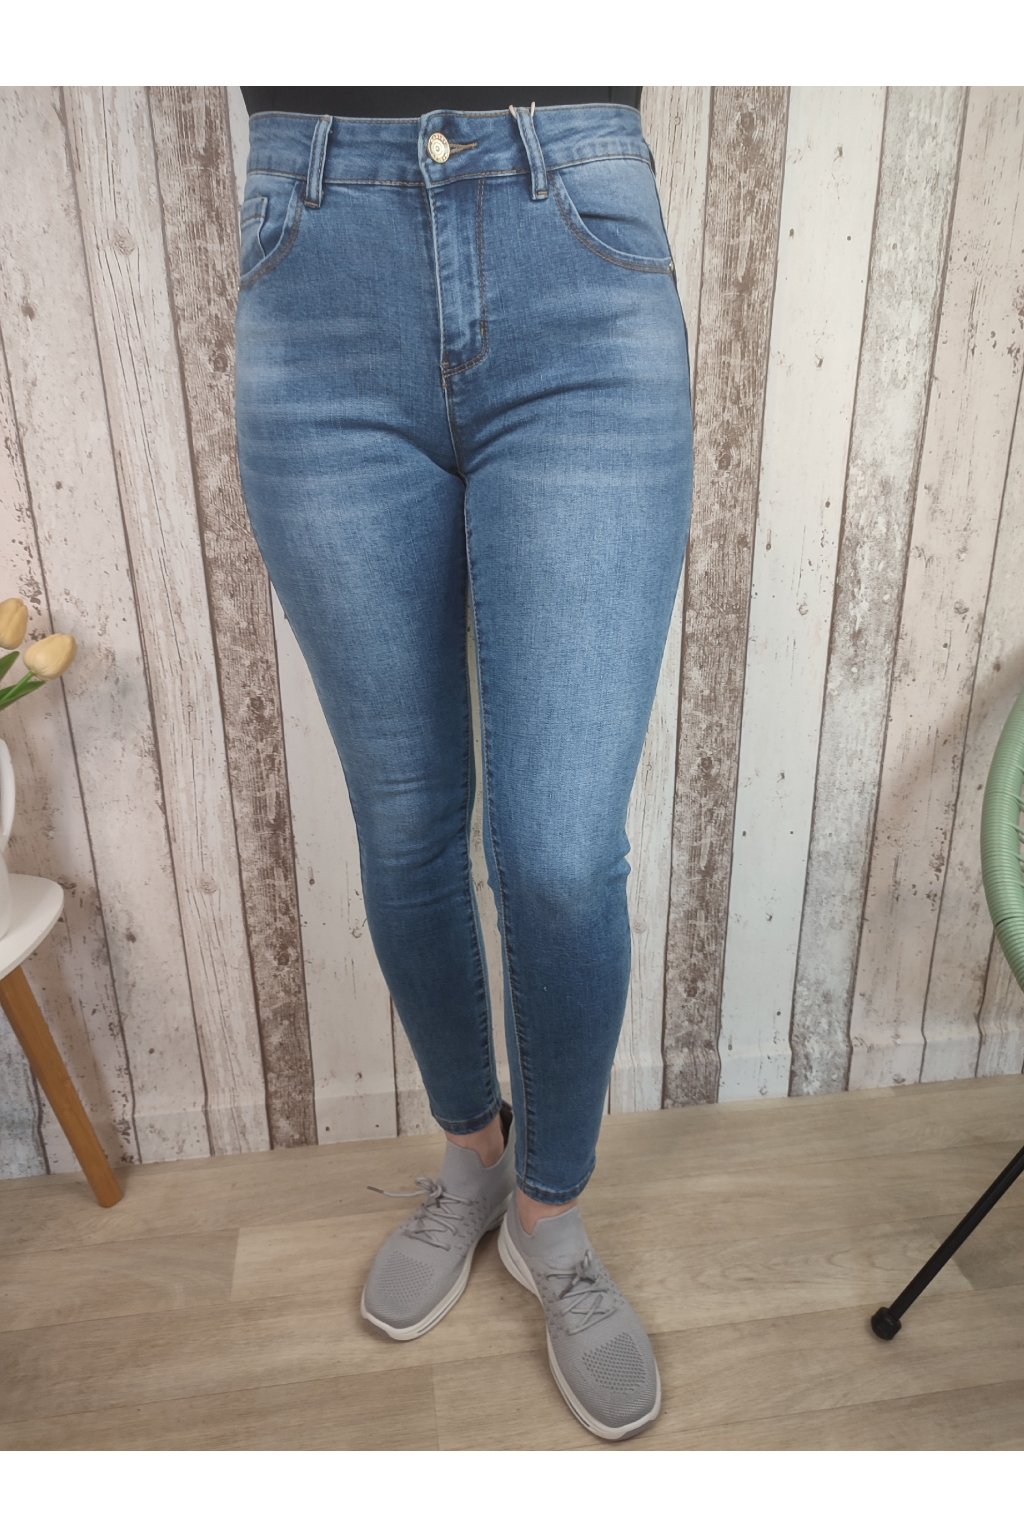 Jeans Push-up, klasik modrá, velké velikosti